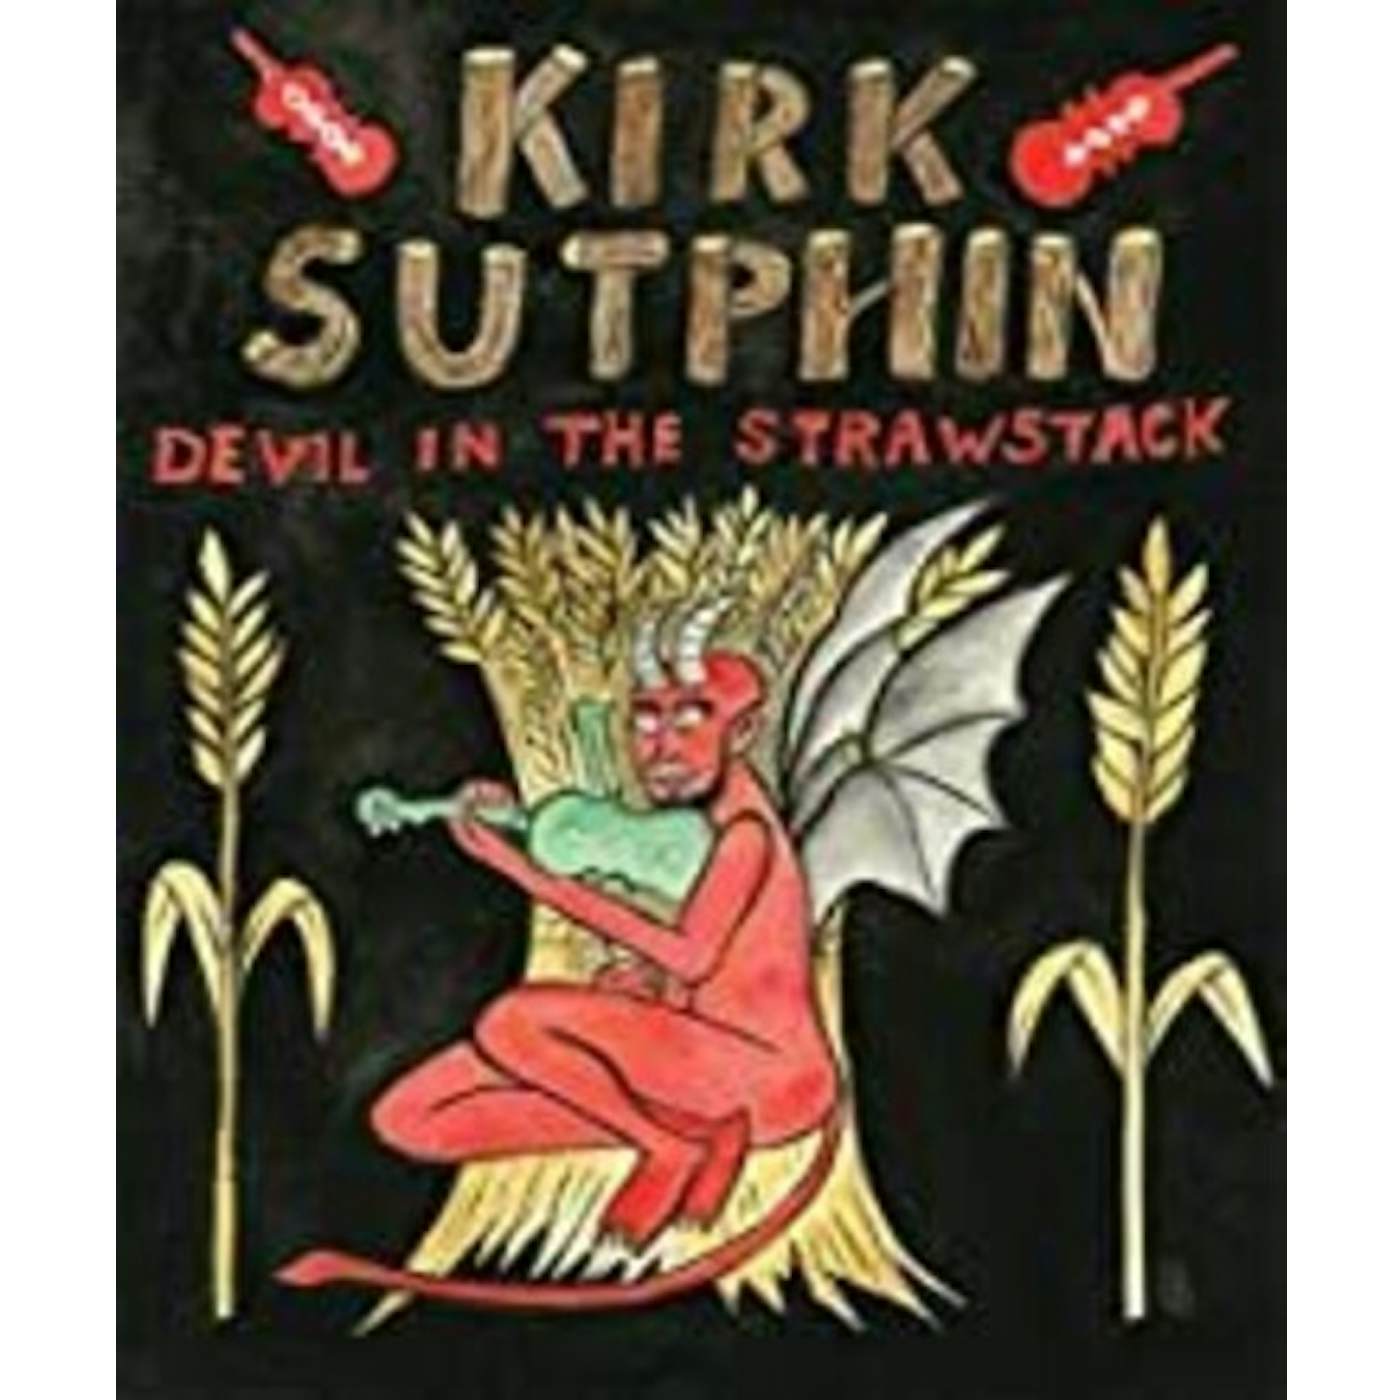 Kirk Sutphin DEVIL IN THE STRAWSTACK DVD